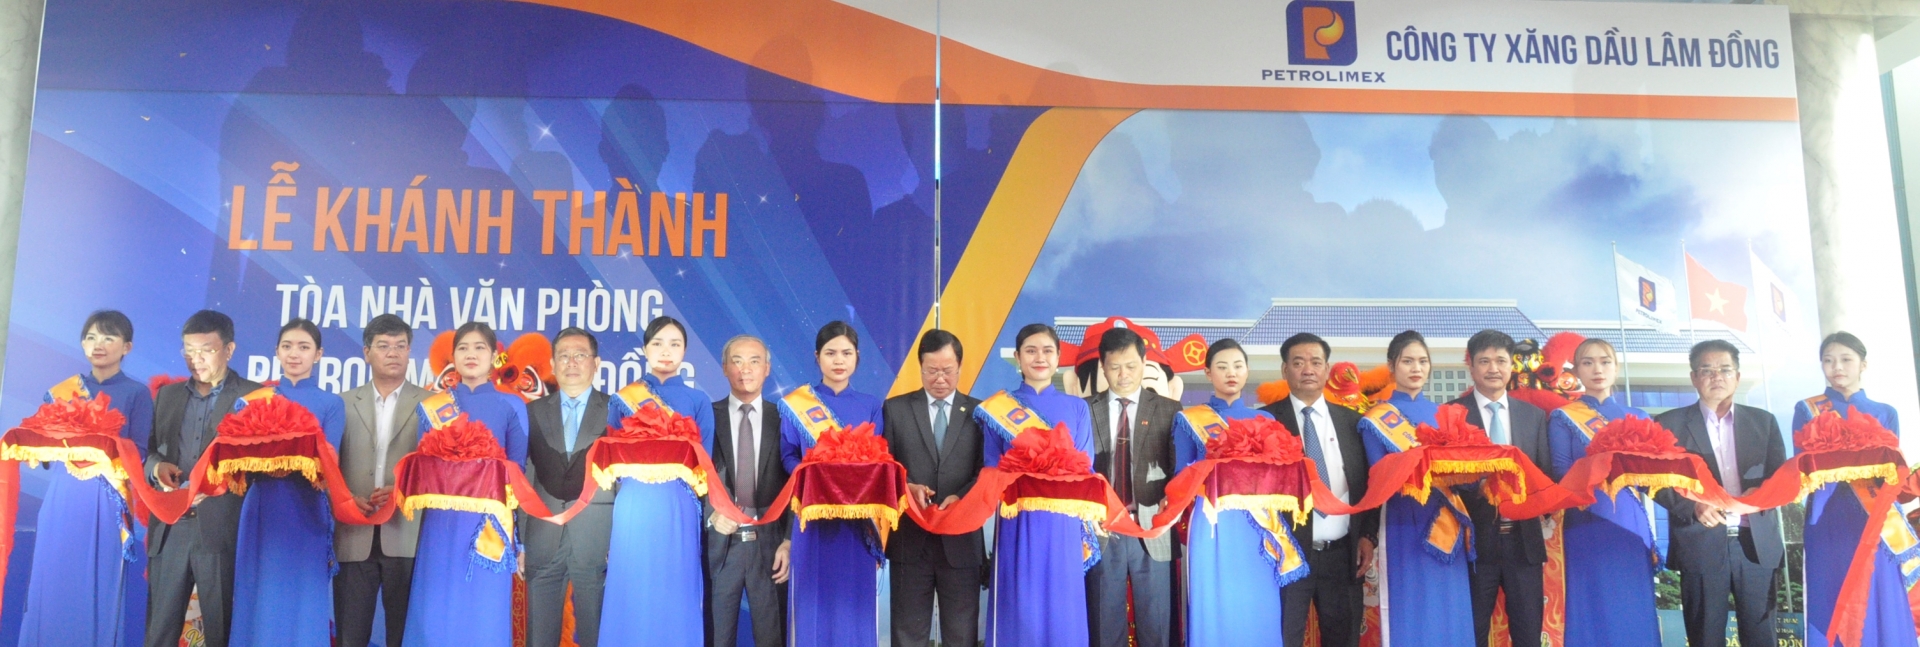 Lãnh đạo tỉnh Lâm Đồng và Tập đoàn Xăng dầu Việt Nam cắt băng khánh thành trụ sở công ty.